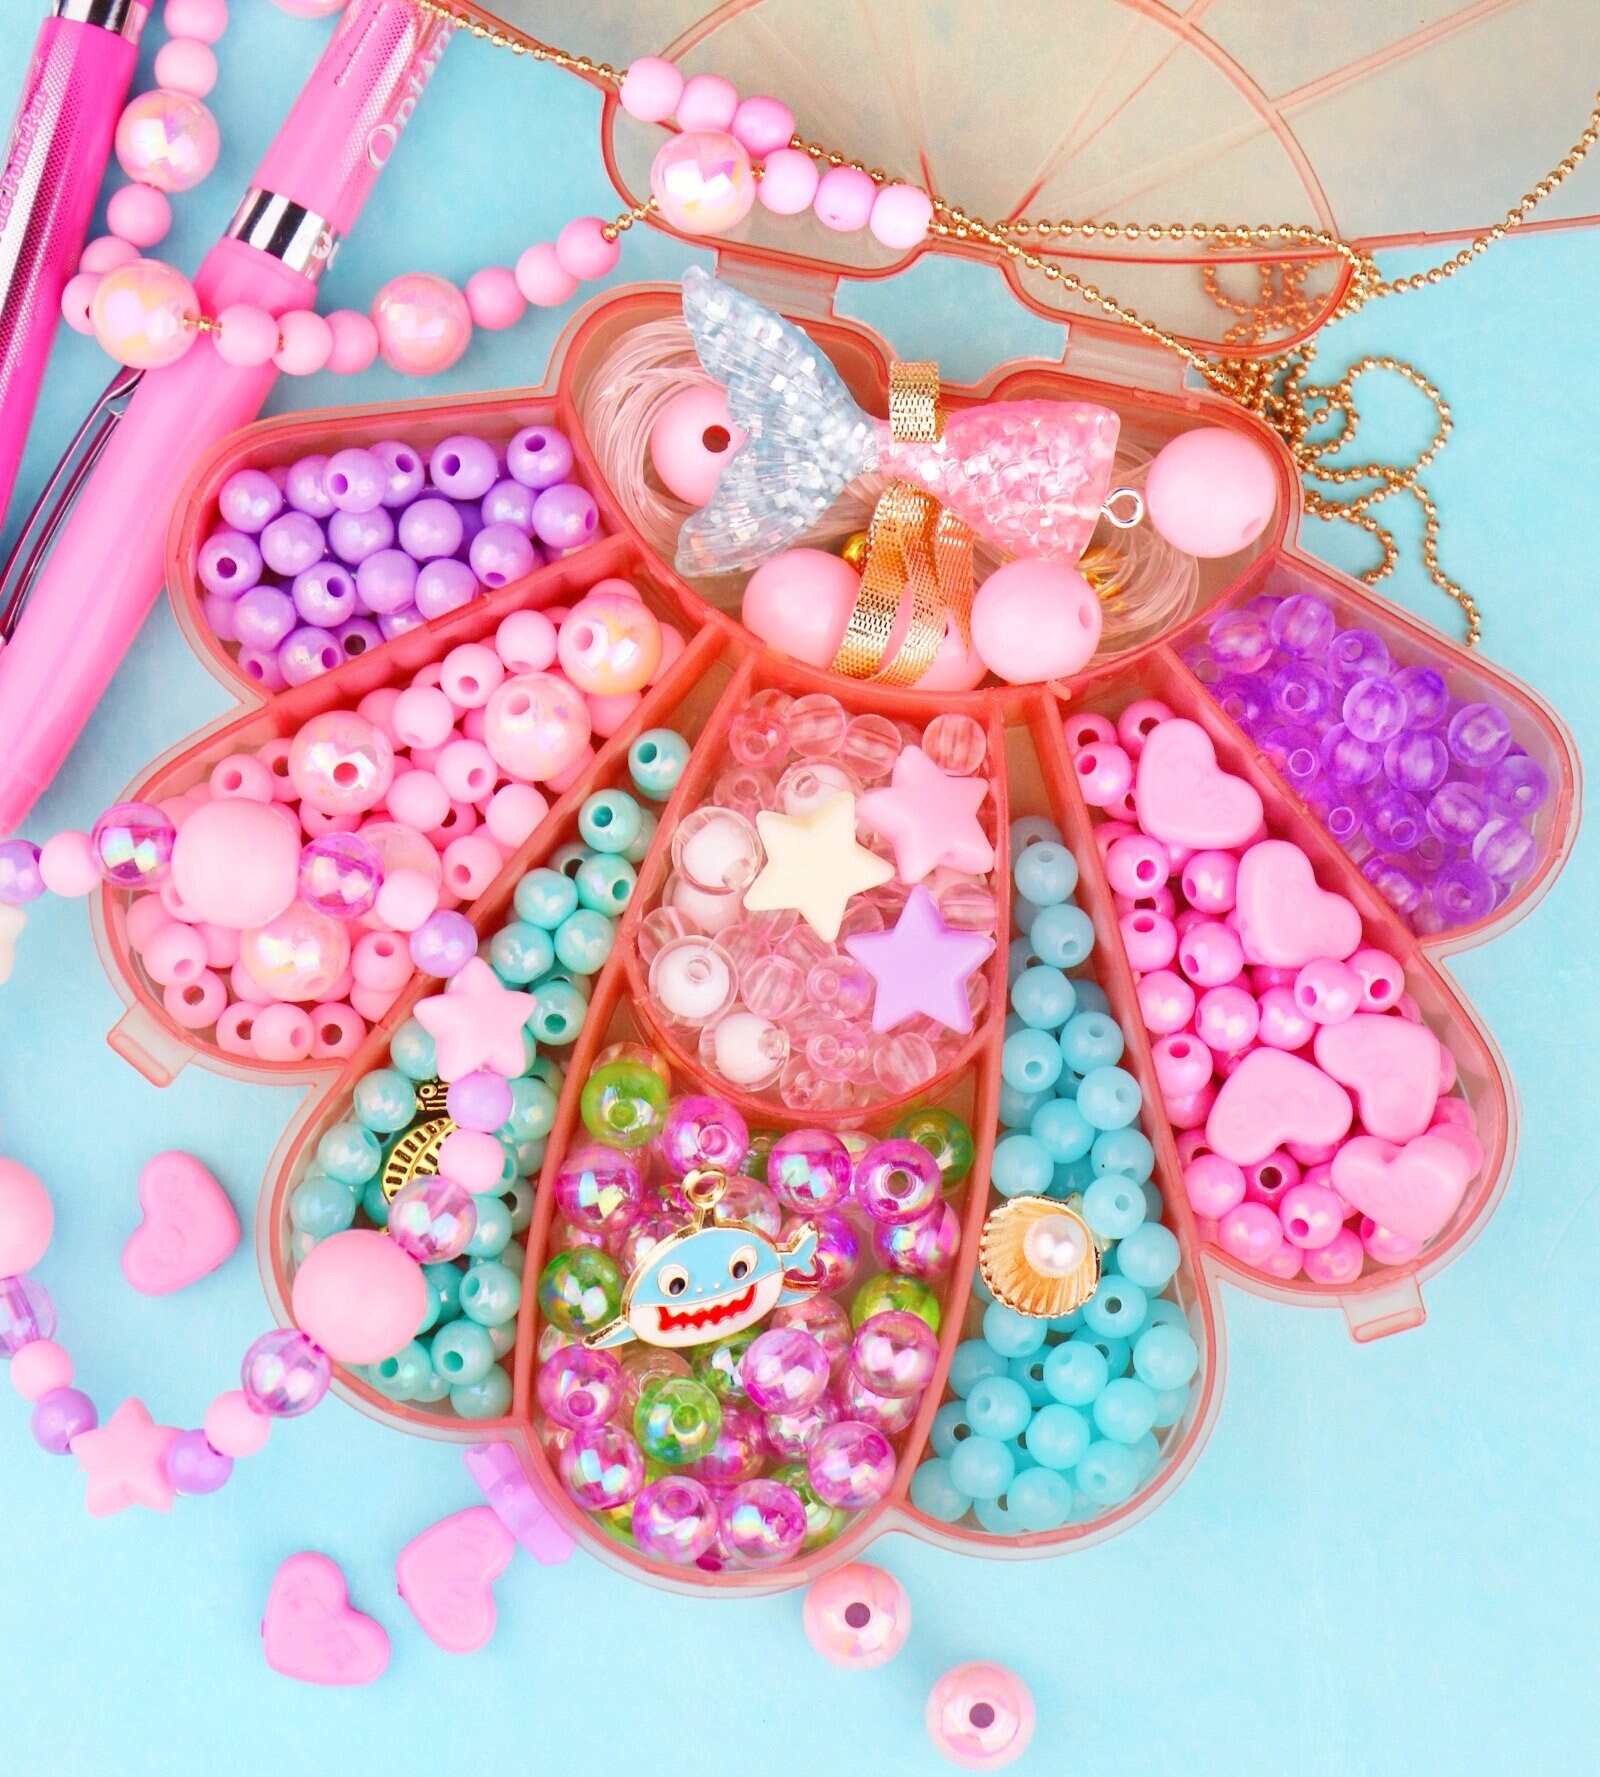  RINVEE Jewelry Making Kit for Girls 4-6 Mermaid Beads